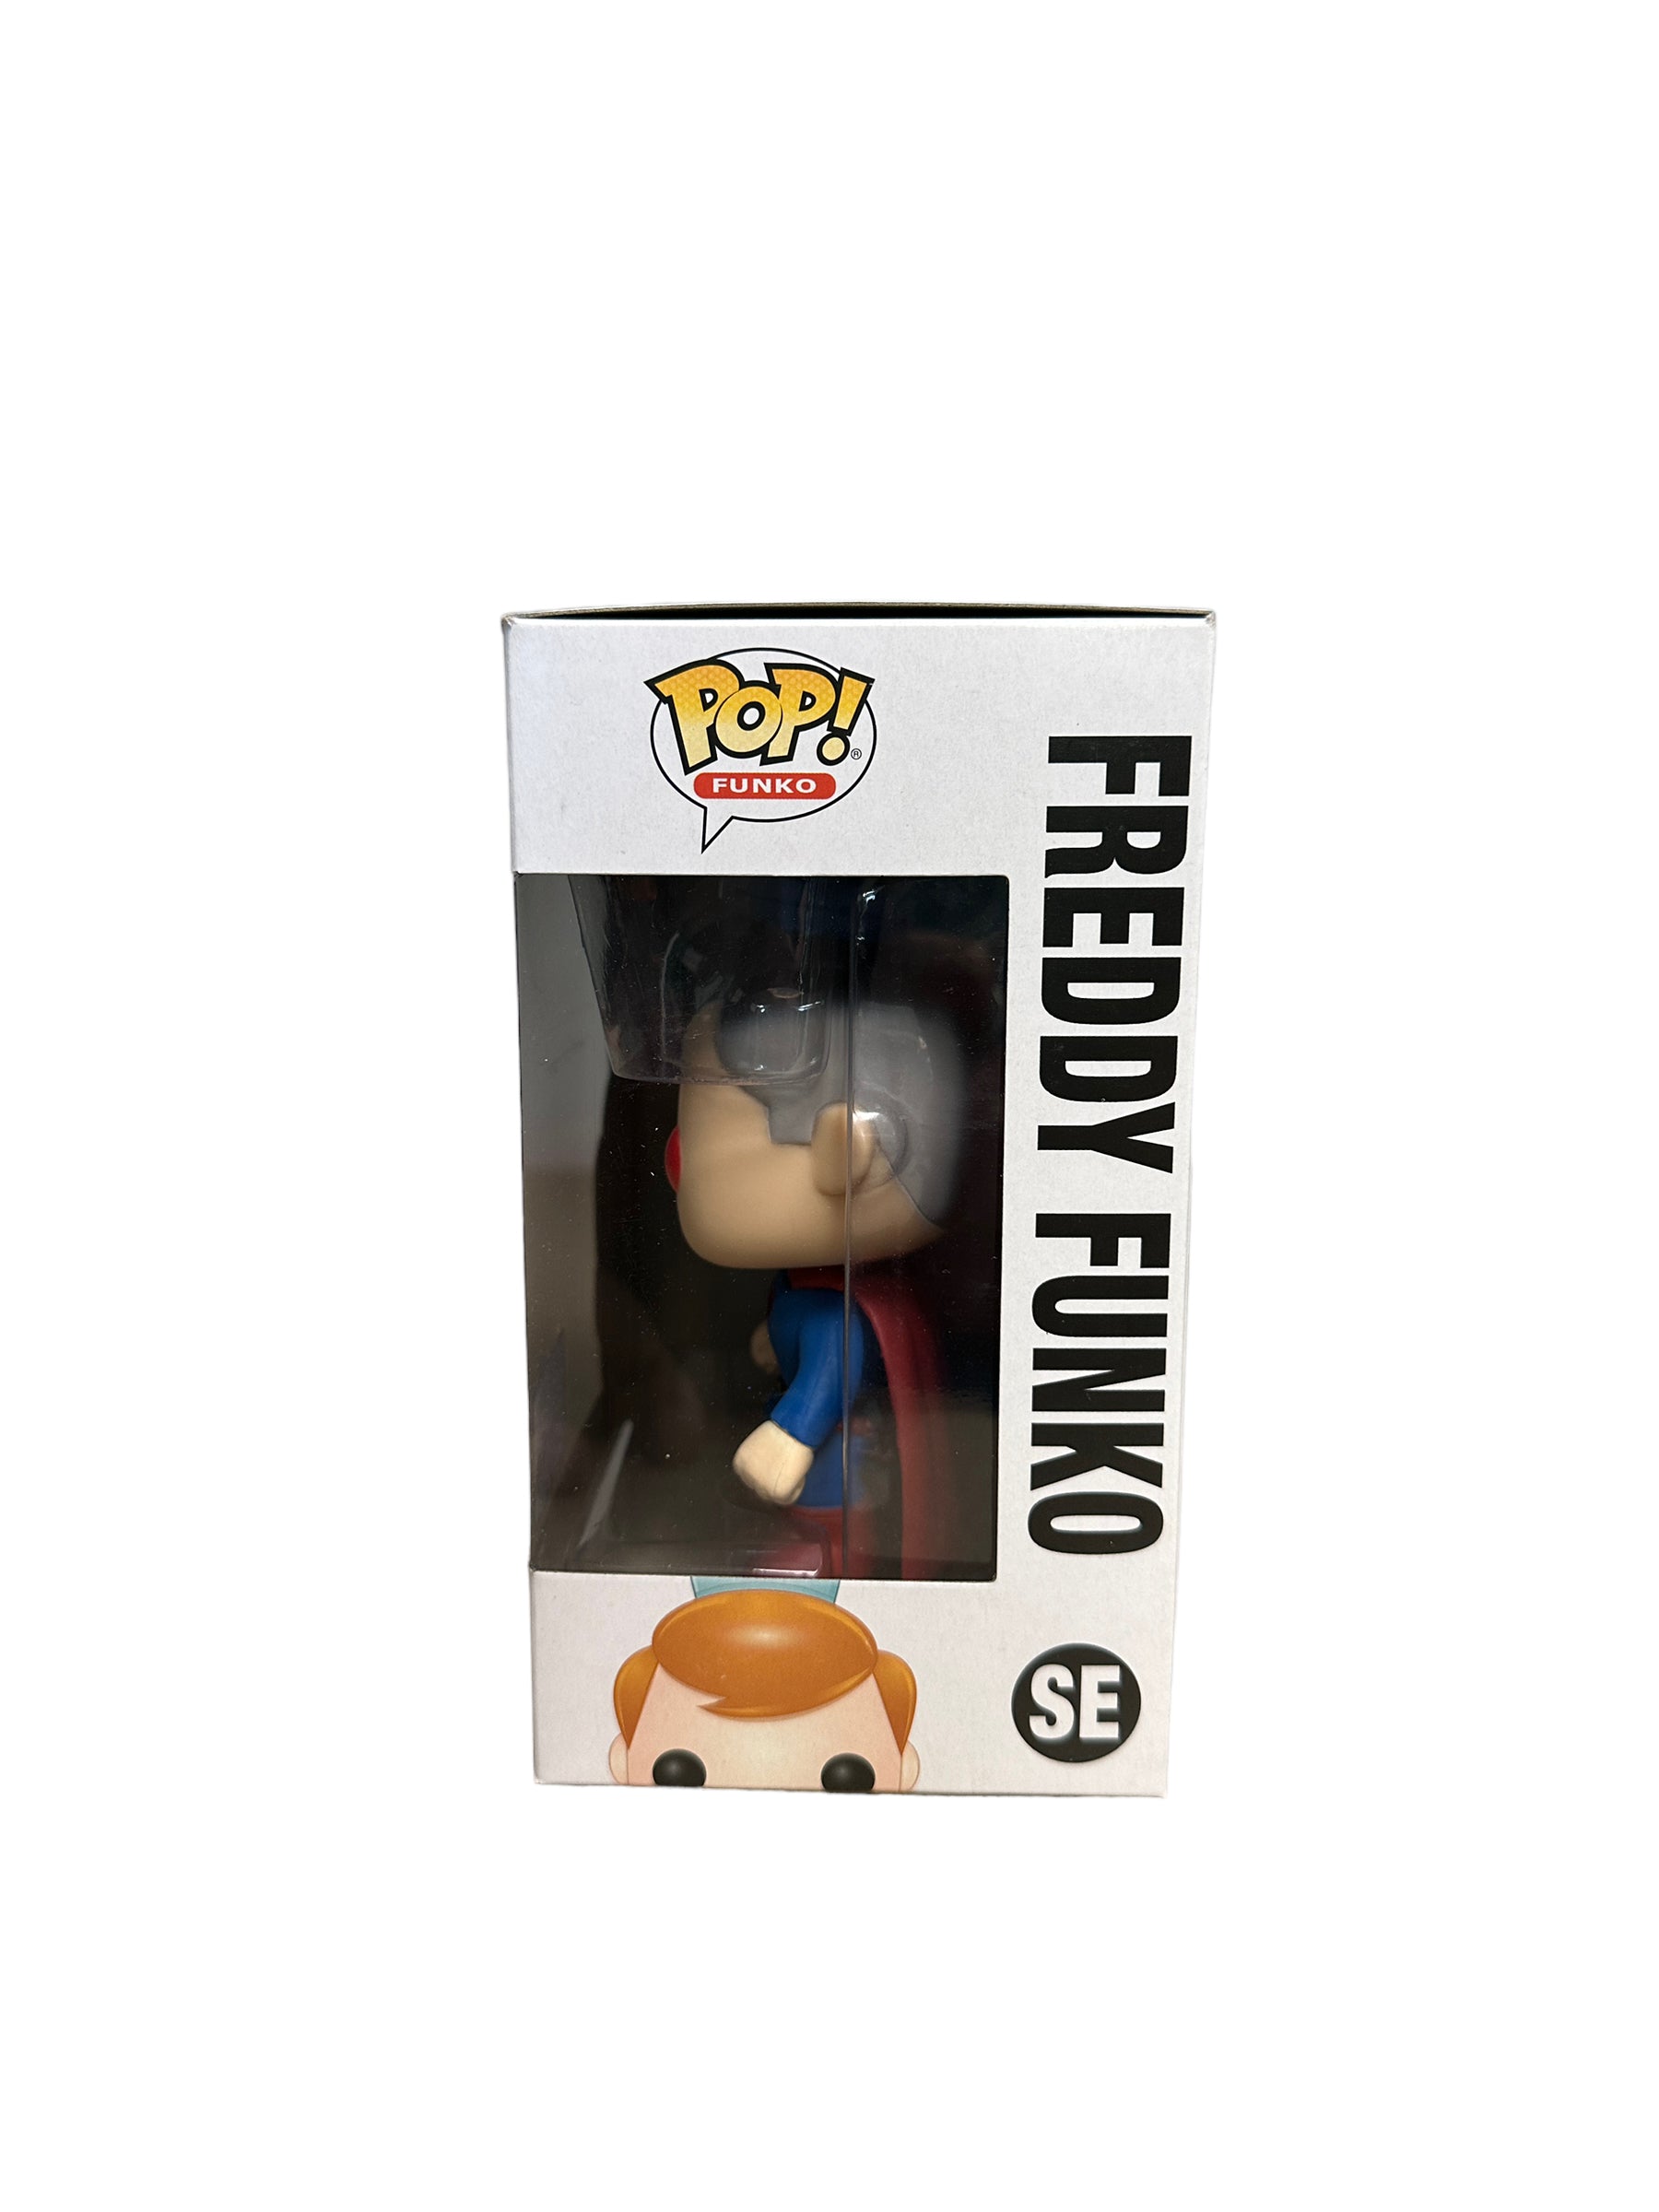 Freddy Funko as Superman [Kingdom Come] Funko Pop! - SDCC 2017 Exclusive LE525 Pcs - Condition 8.75/10